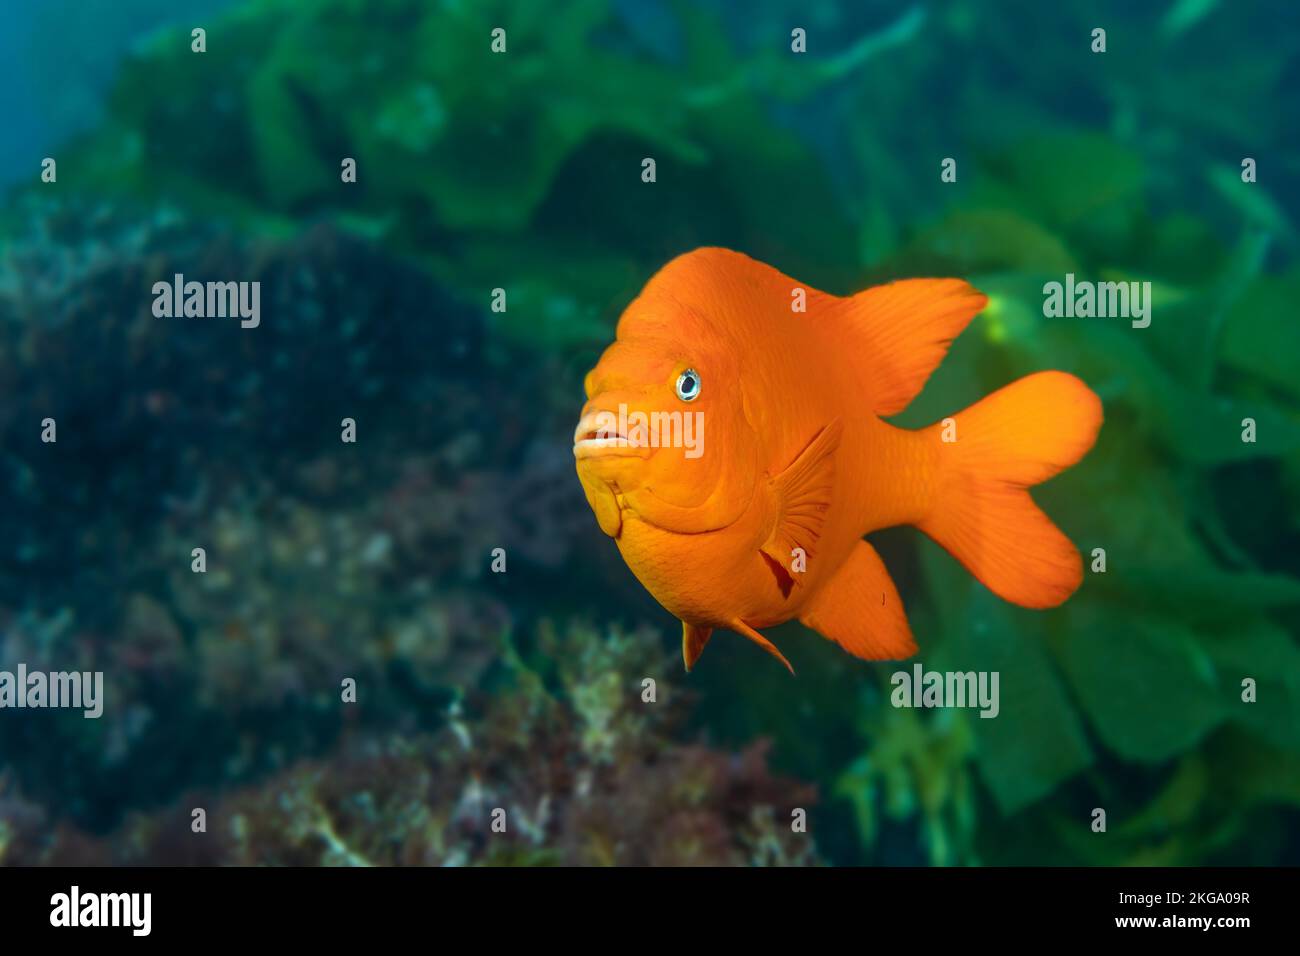 Ein leuchtend orangefarbener Garibaldi-Fisch, der während eines sonnigen Tauchgangs durch sein Seetang-Beet schwimmt. Aufnahme mit sehr geringer Schärfentiefe, Fokus auf das Auge. Stockfoto